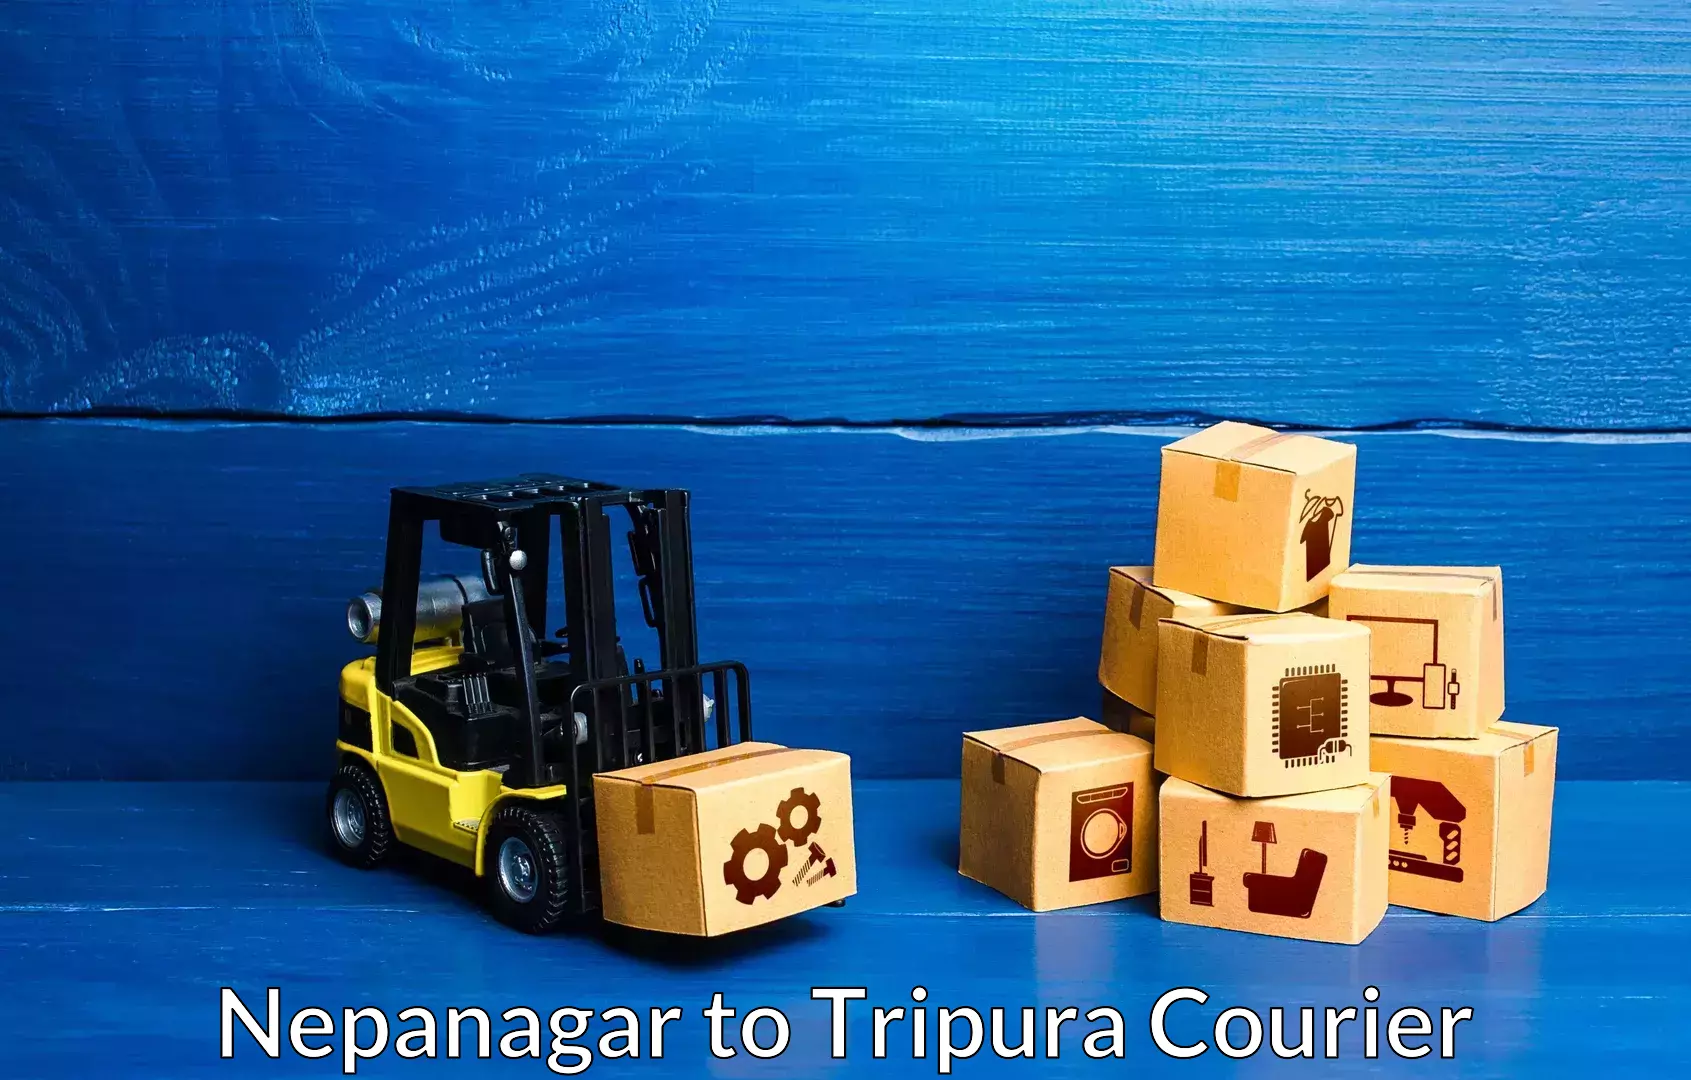 Quality relocation services Nepanagar to Agartala